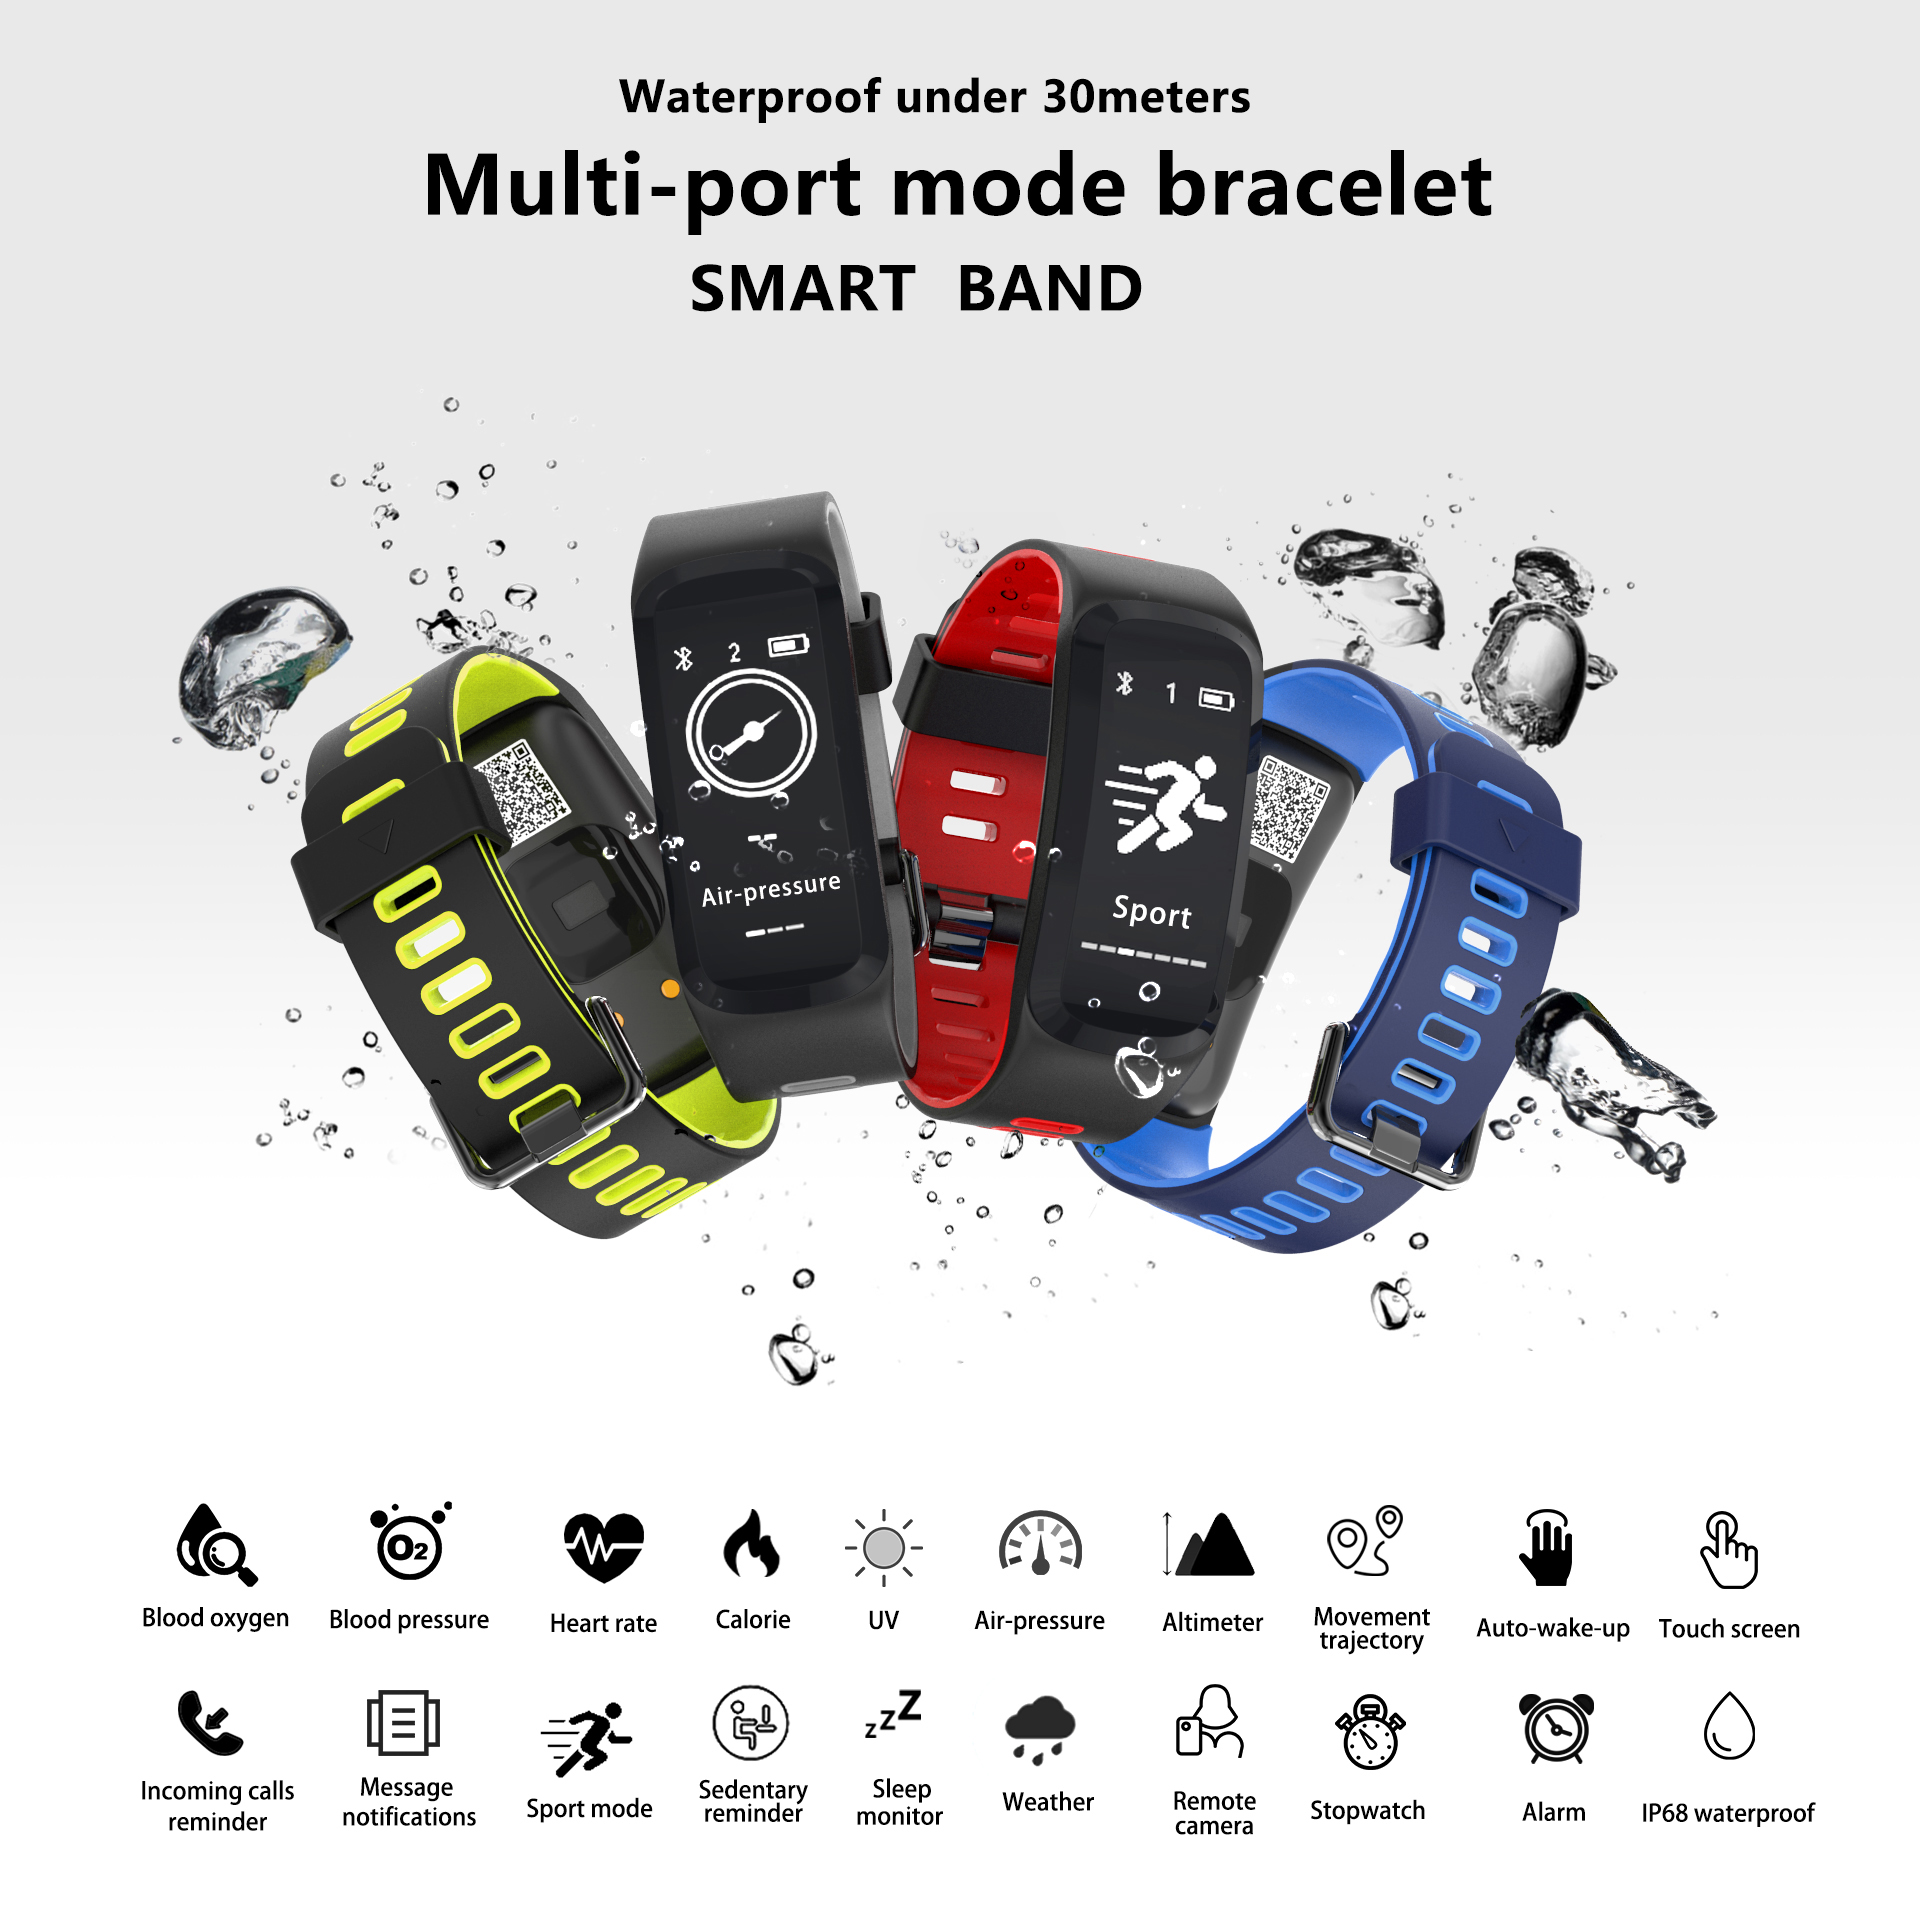 Bracelete Smartwatch F4 com Bluetooth 4.0 - IP68 à prova d’água, tenha todas as funcionalidades do seu Smartphone - Android ou Iphone no seu pulso.